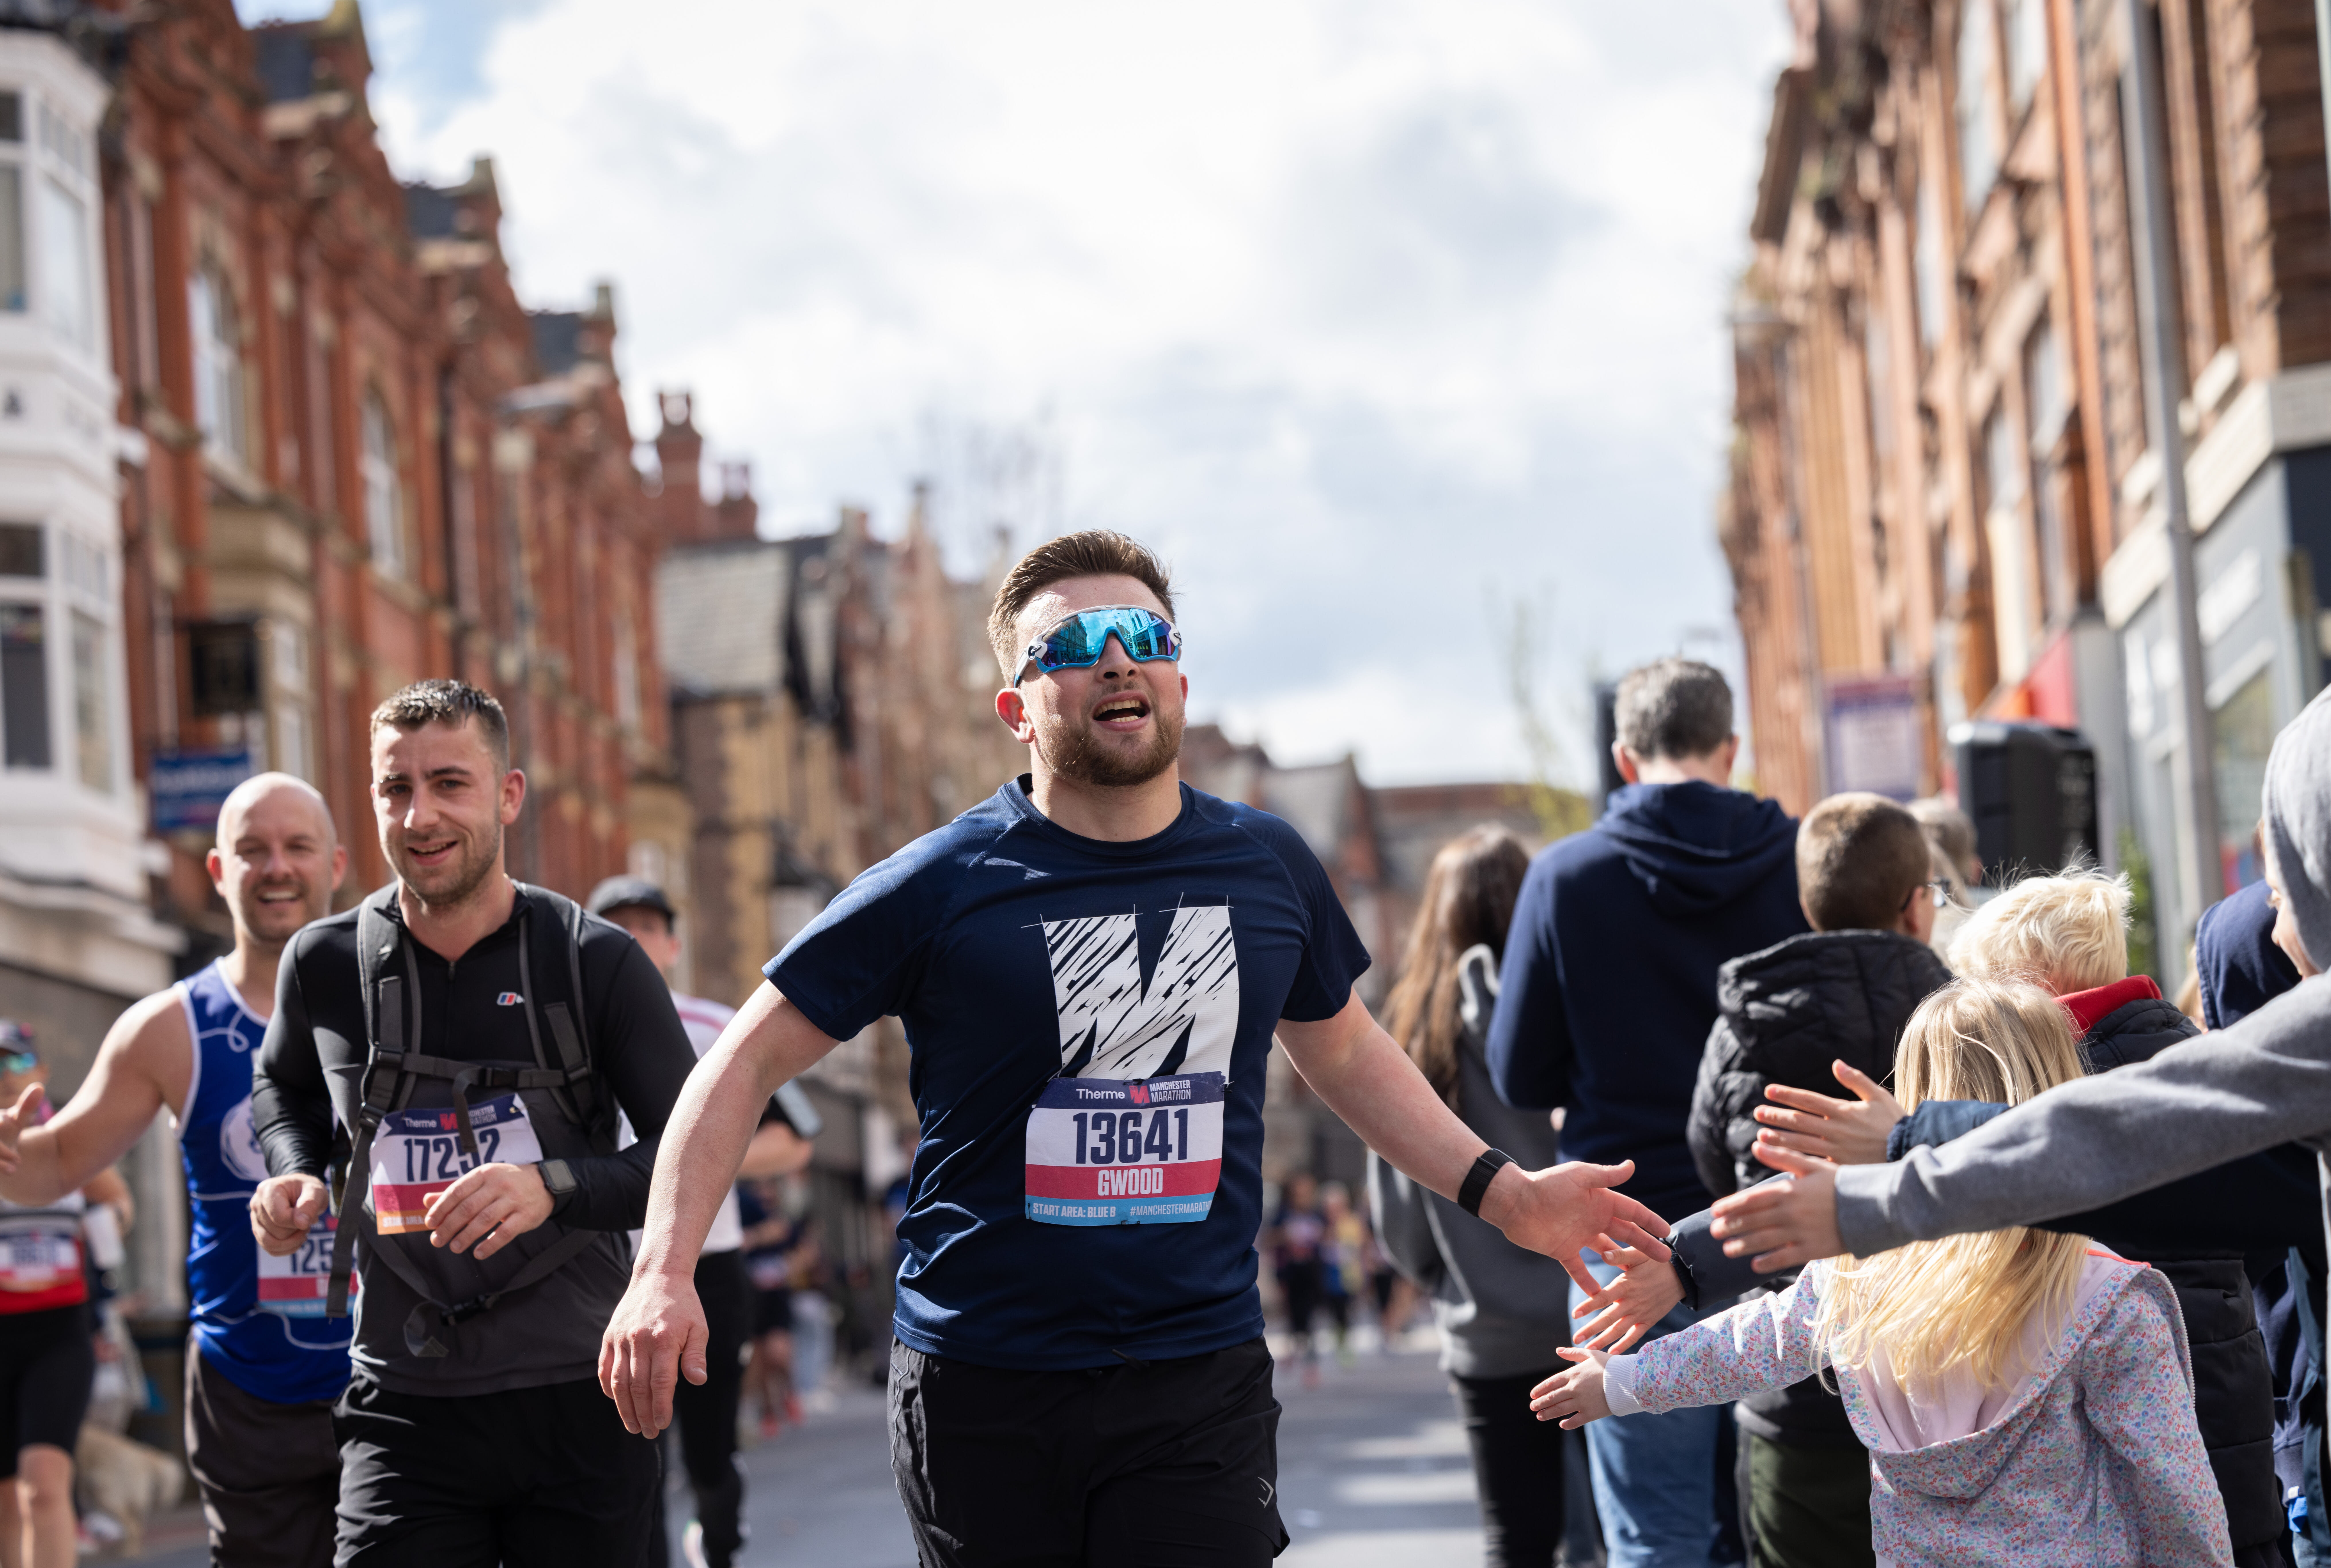 The adidas Manchester Marathon is the UK's friendliest marathon